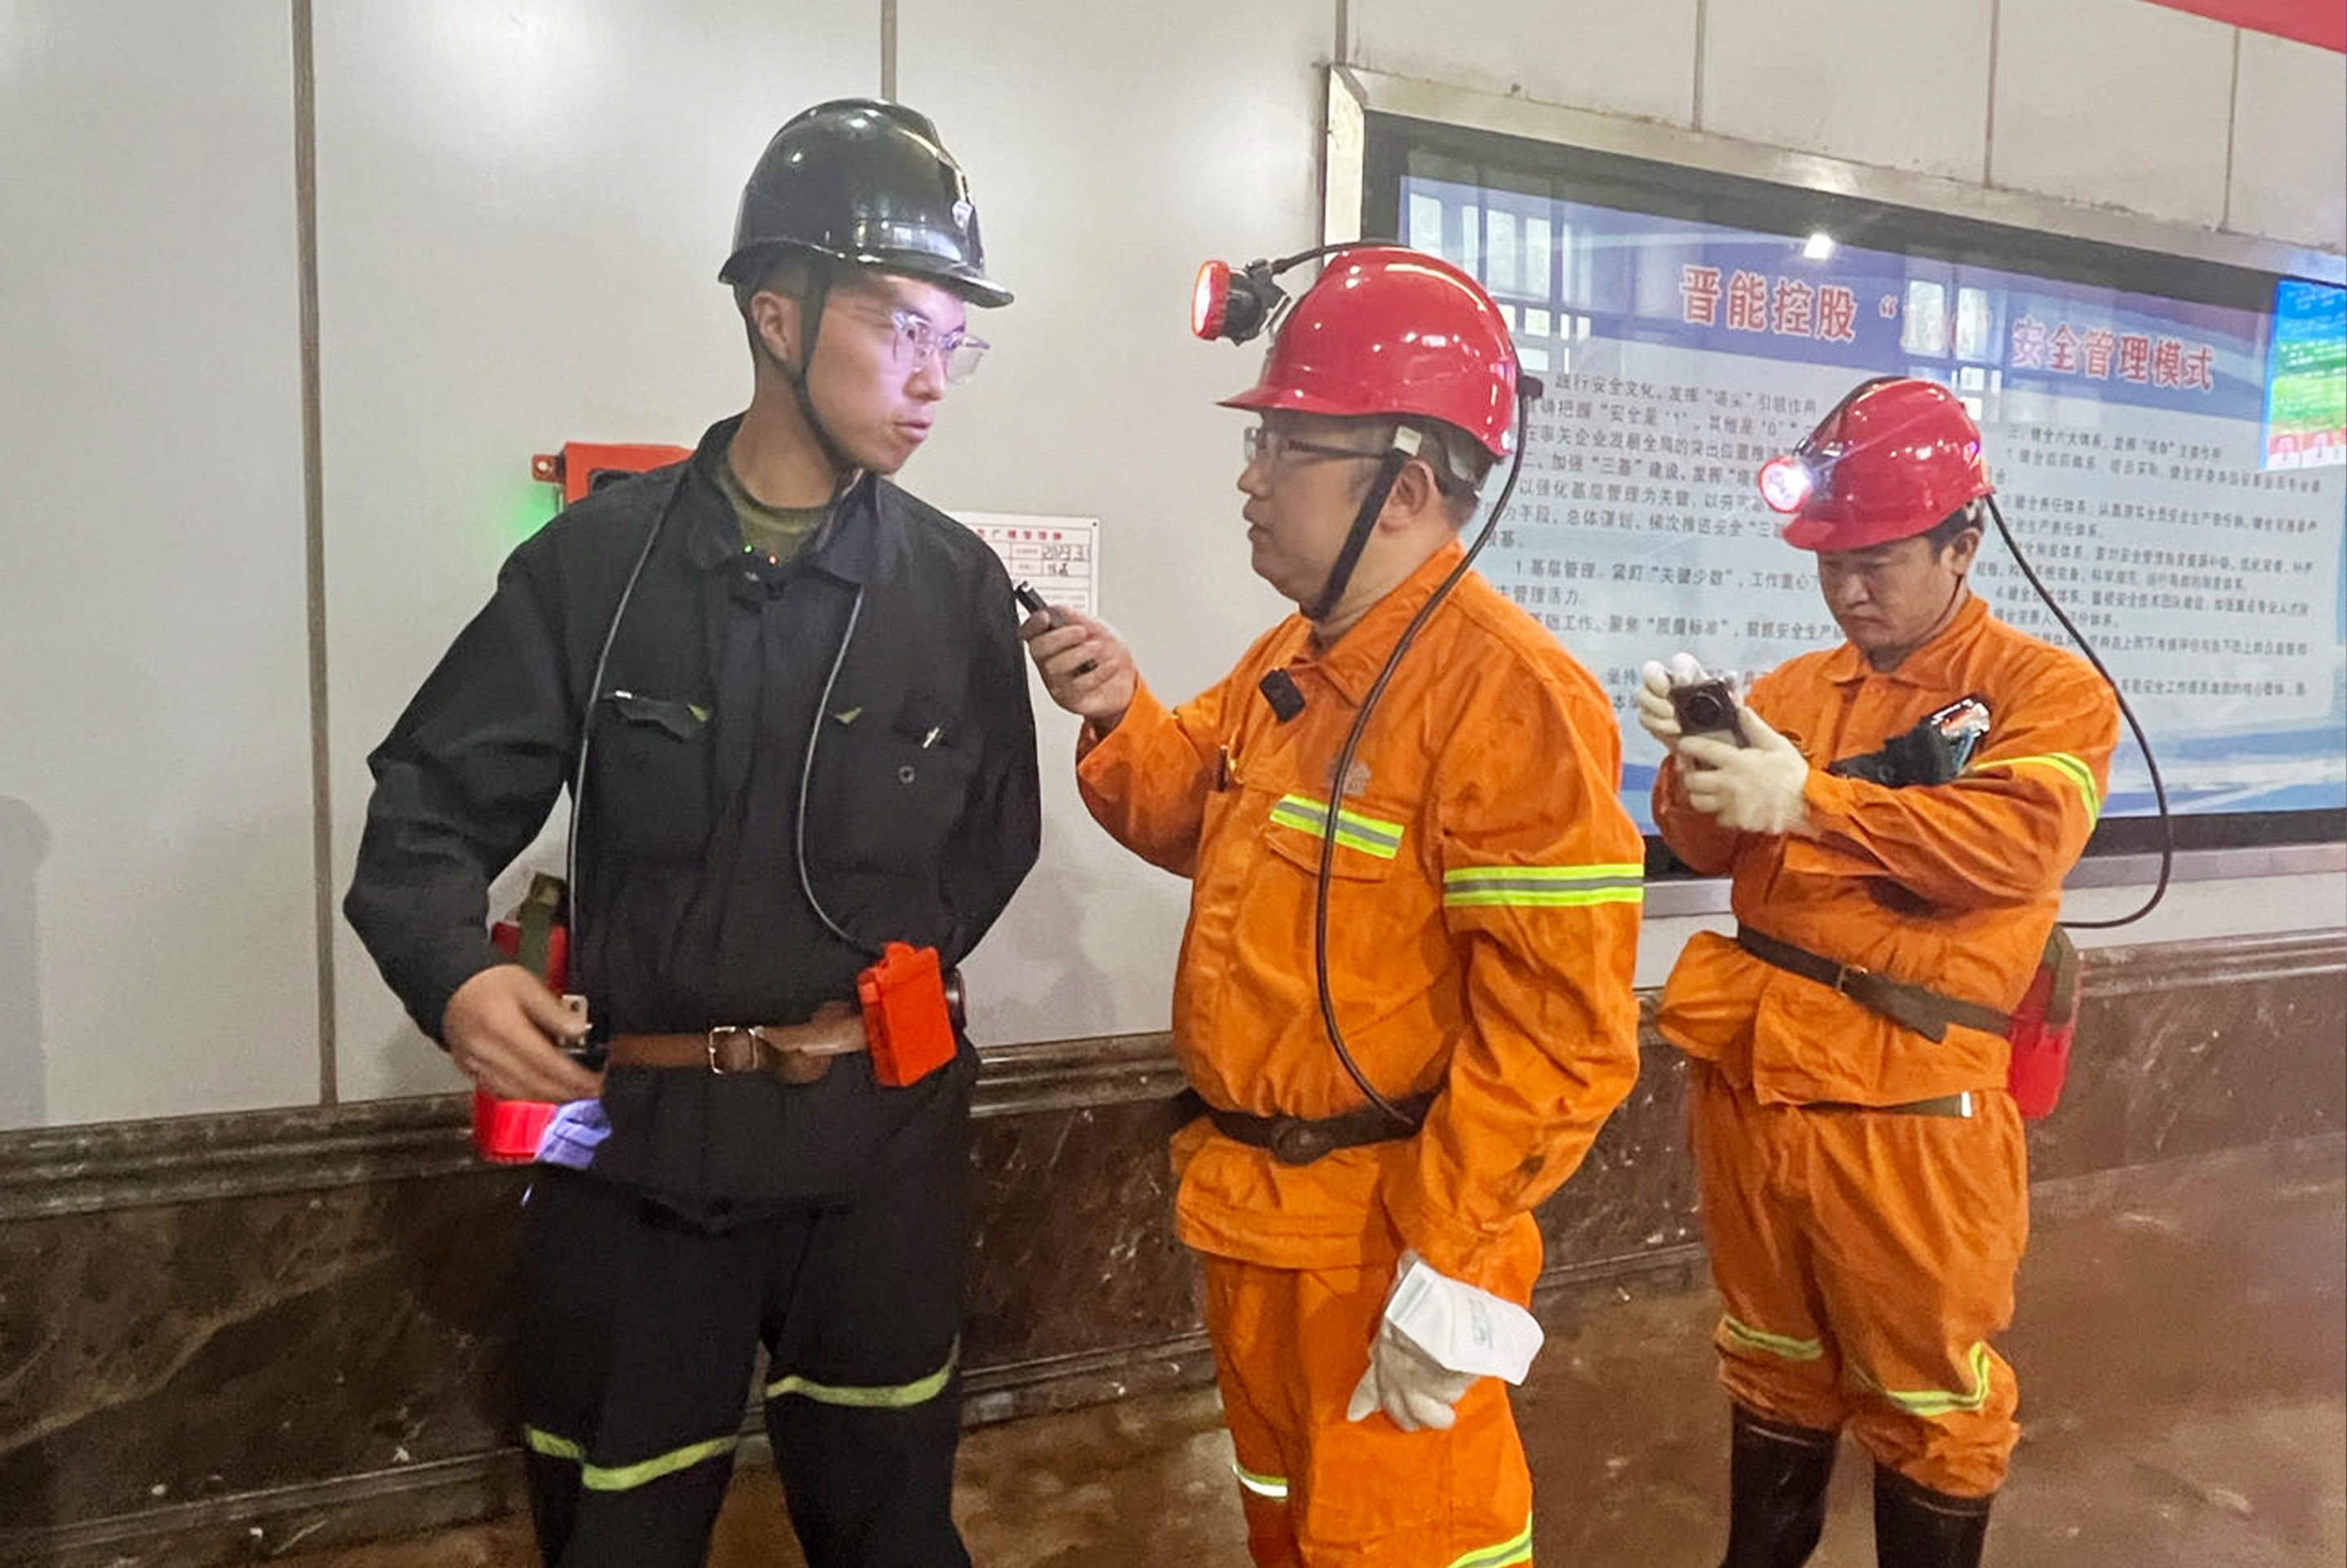 采访团成员在矿区与矿工交流。人民网记者邓志慧摄